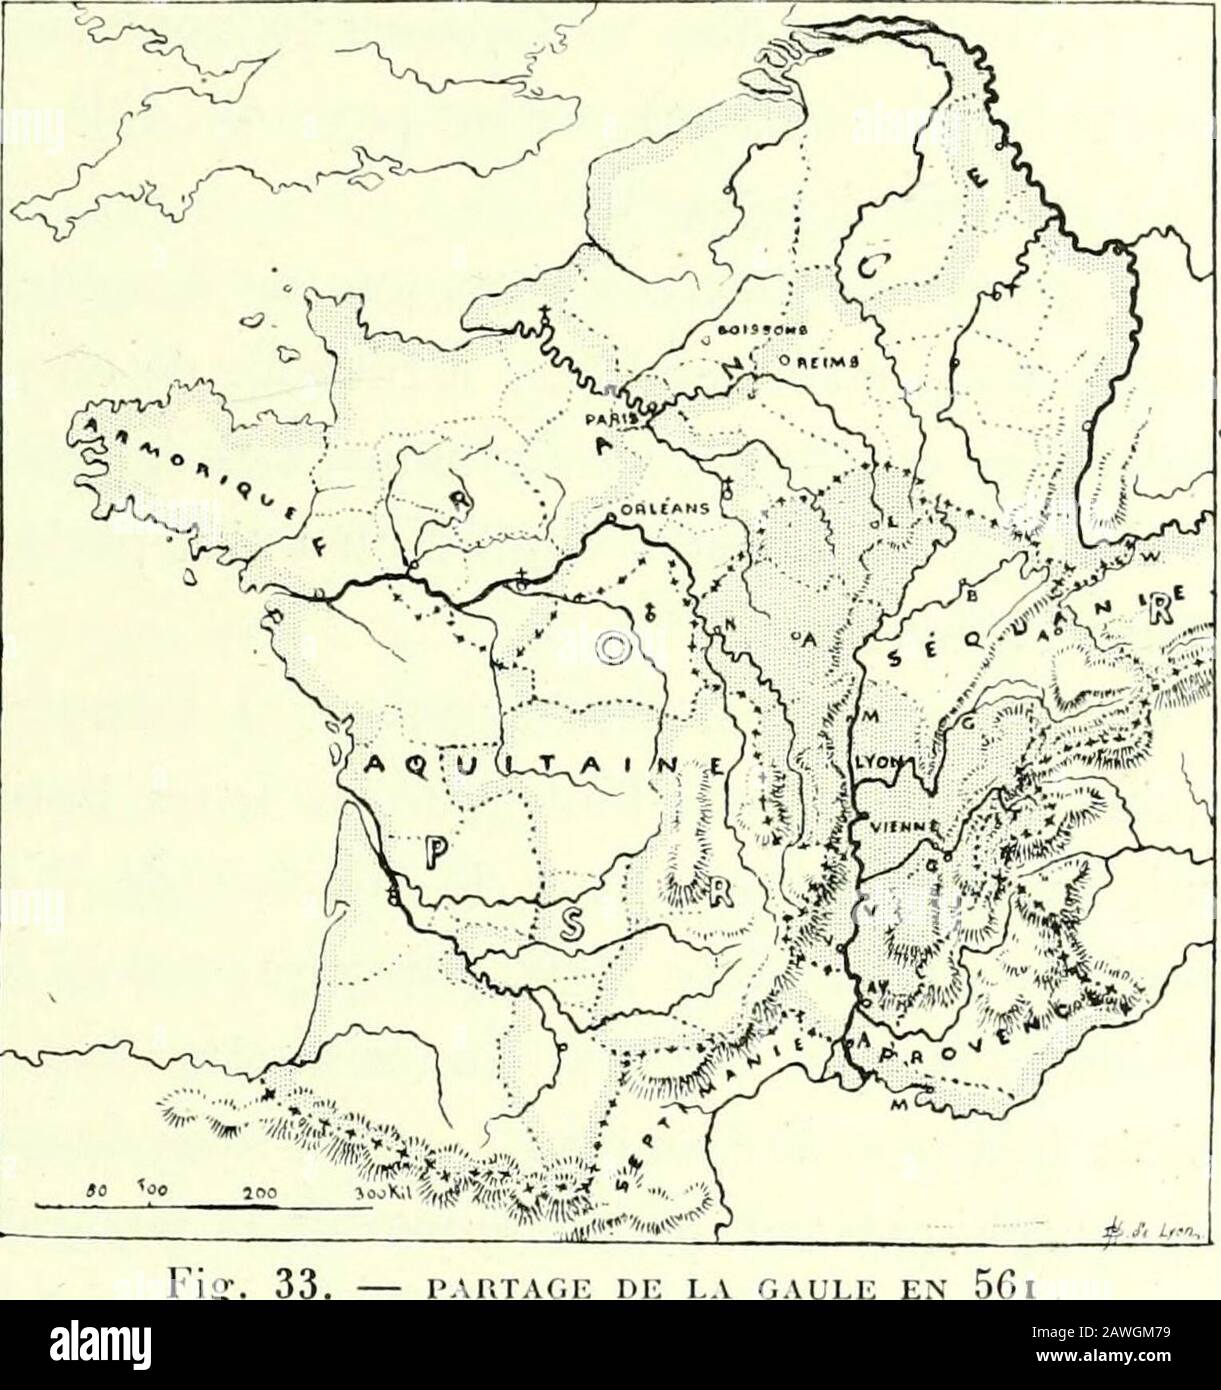 Nouvelle histoire de Lyon et des ispacies de Lyonnais, Forez, Beaujolais, Franc-Lyonnais et Dombes . inces-santes mutilations; les vainqueurs eux-mêmes lui rendirent son unité et lin-tégraté de son territen létenant,commoire à ses débuts jusquaux rives de la Méditerranée. Mieuxencore ils lui donnèrent officiellement le nom de Burgondieque les Gallo-Romains de la Lyonnaise I1C et de la Viennoisenavaient jamais accetté et quils rejetèrent toutes les fois quecela leur fut possible. Contrairement à cet exclusivisme lesFrancs se montrèrent respectueux de la liberté et de lauto-nomie des nationa Foto Stock